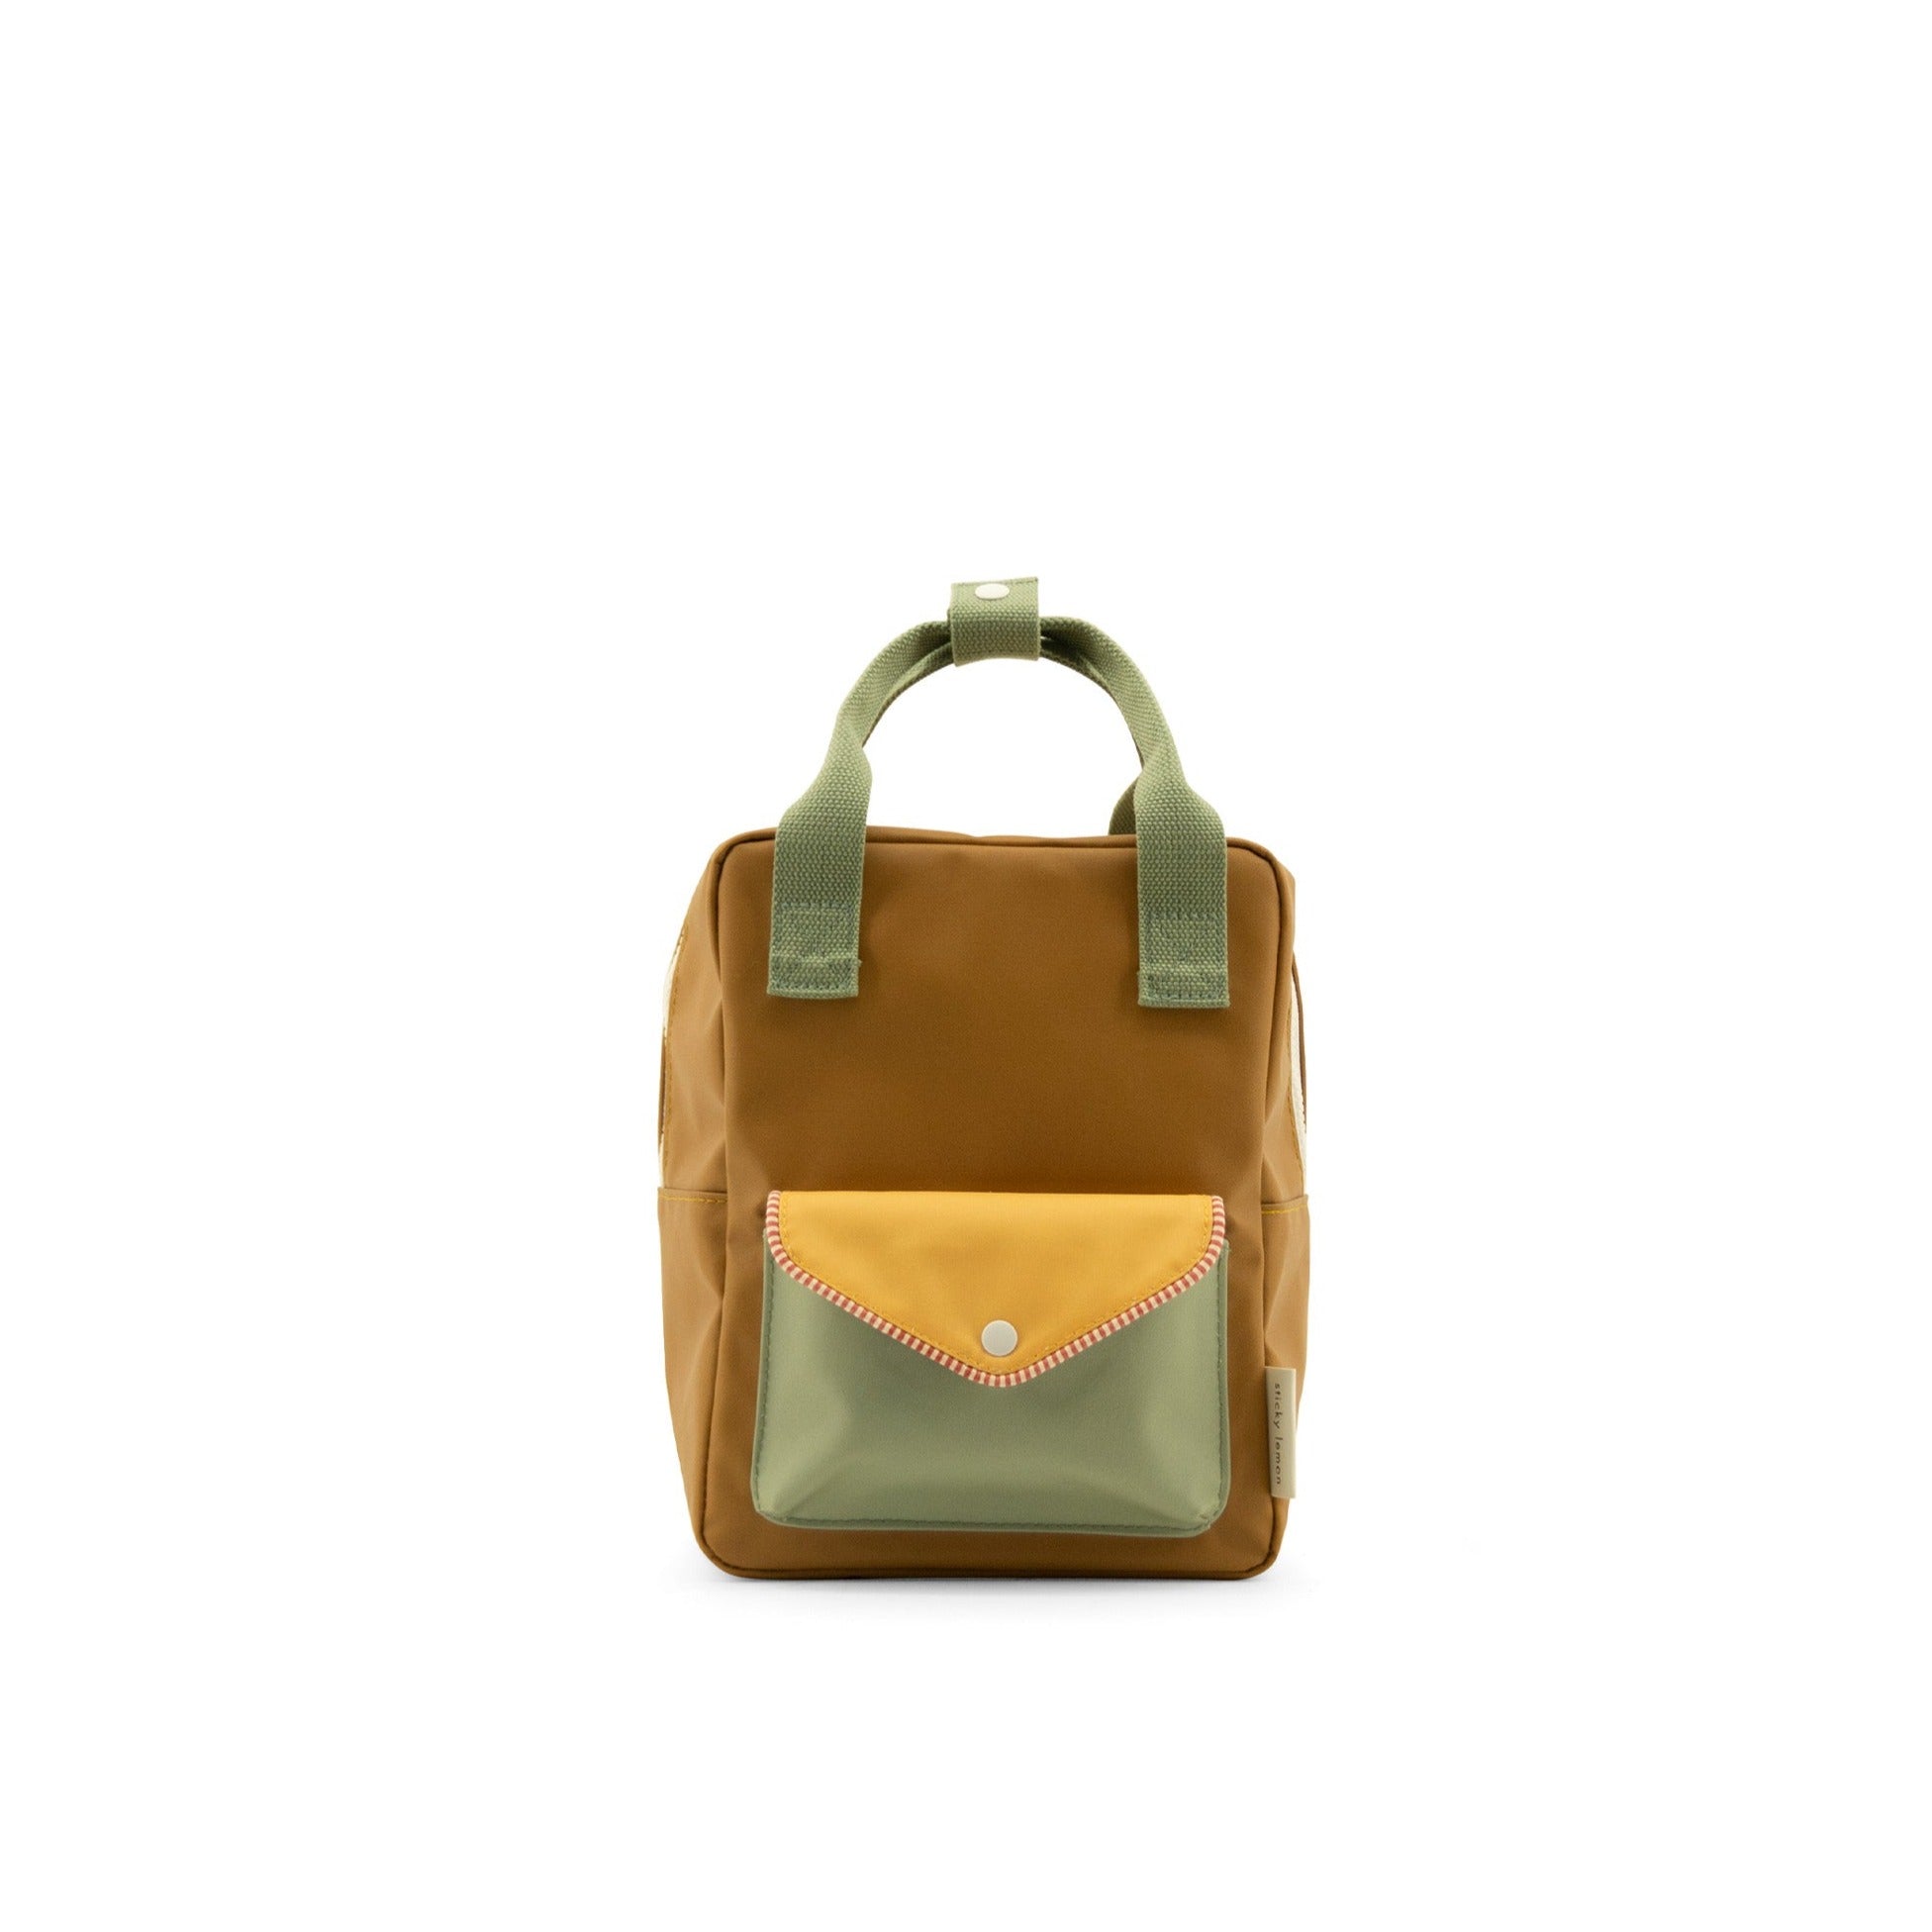 Sticky Lemon Envelope Backpack Small - Khaki Green